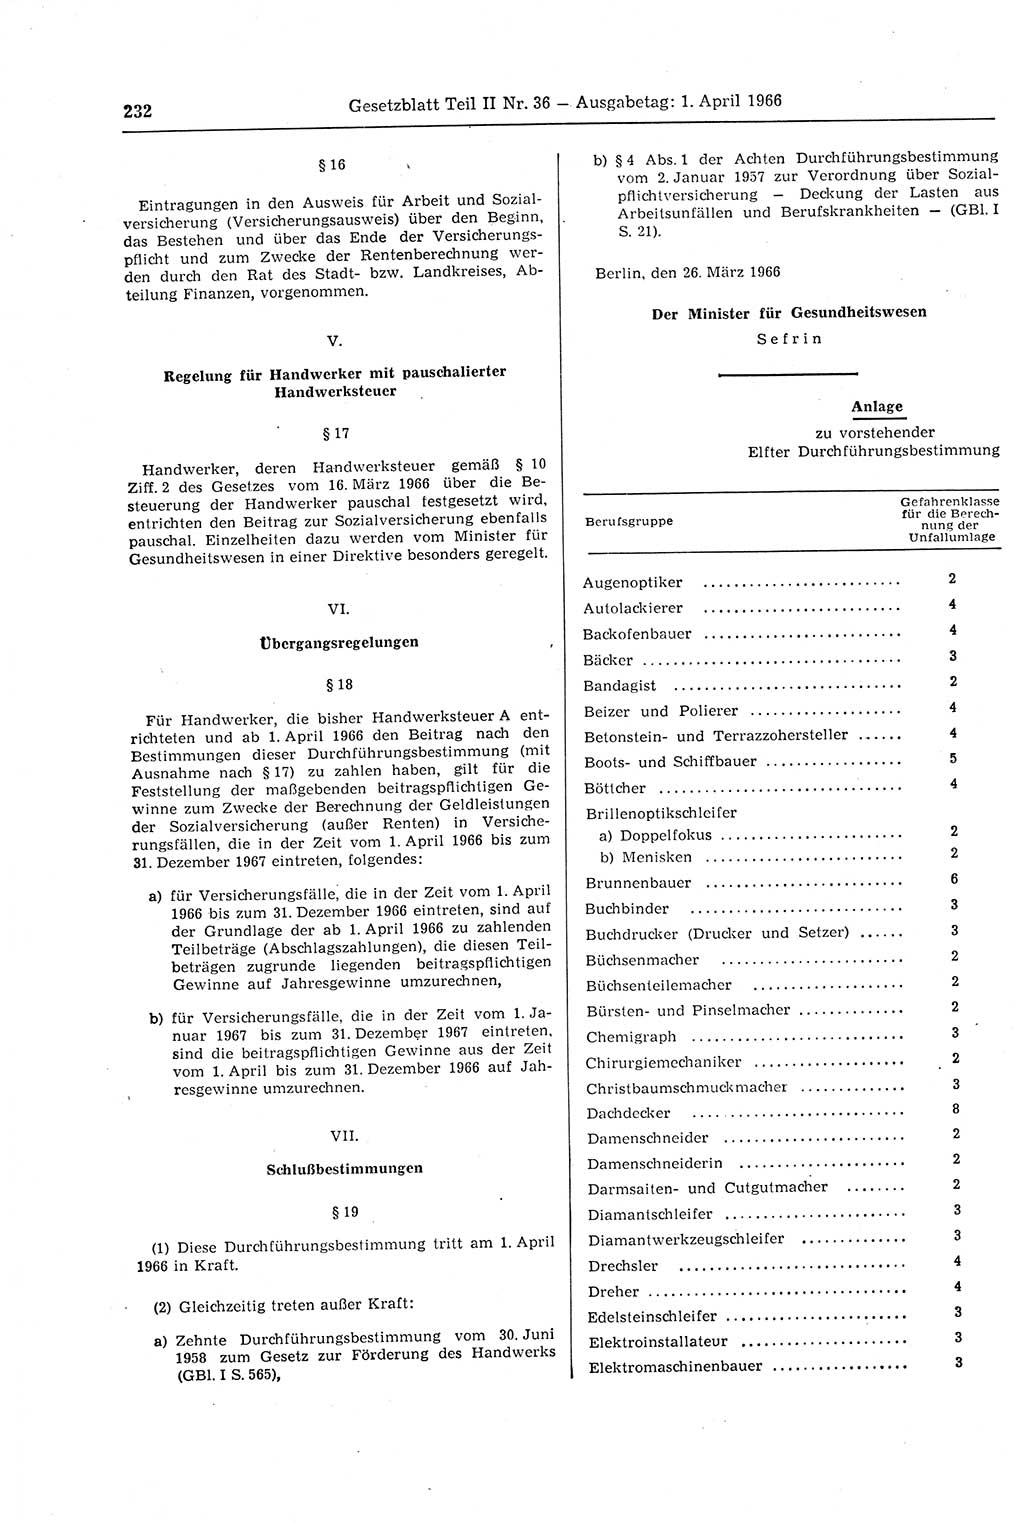 Gesetzblatt (GBl.) der Deutschen Demokratischen Republik (DDR) Teil ⅠⅠ 1966, Seite 232 (GBl. DDR ⅠⅠ 1966, S. 232)